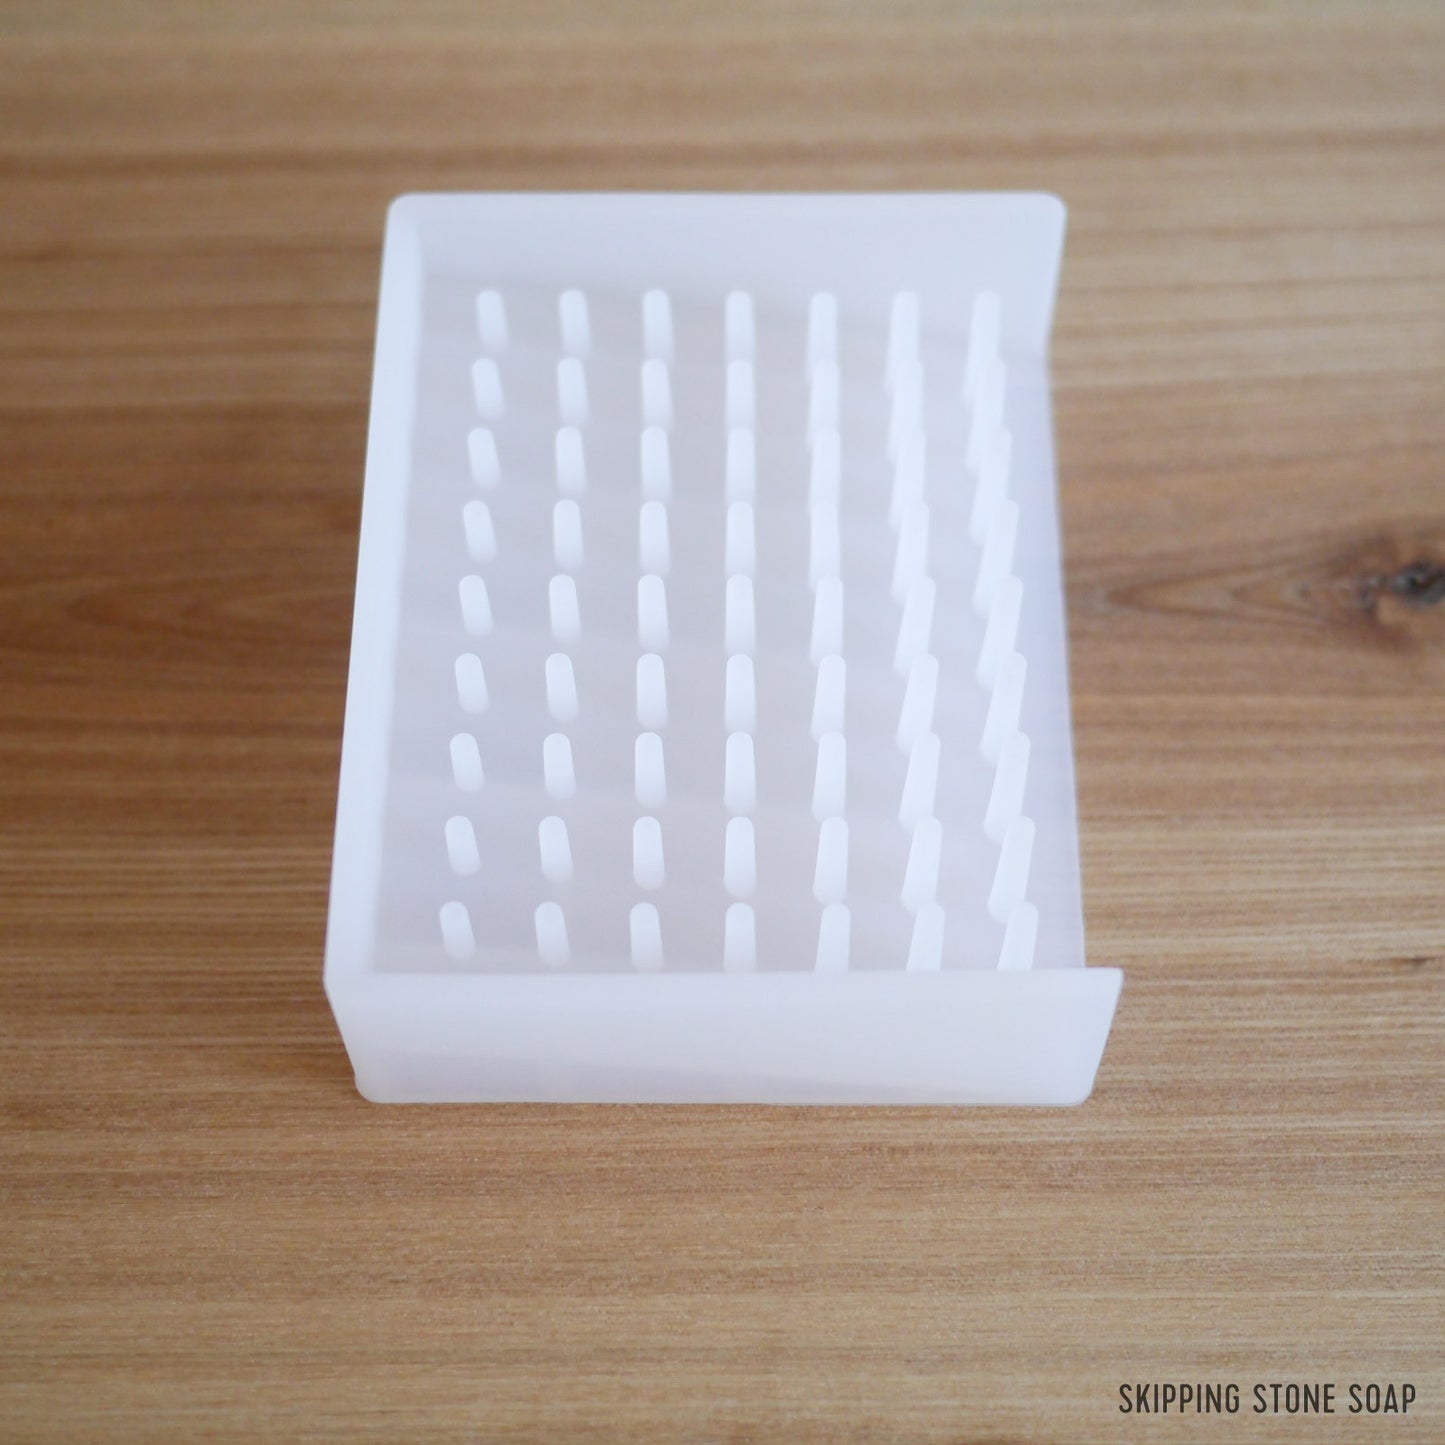 Yamazaki Float Silicone Soap Tray White